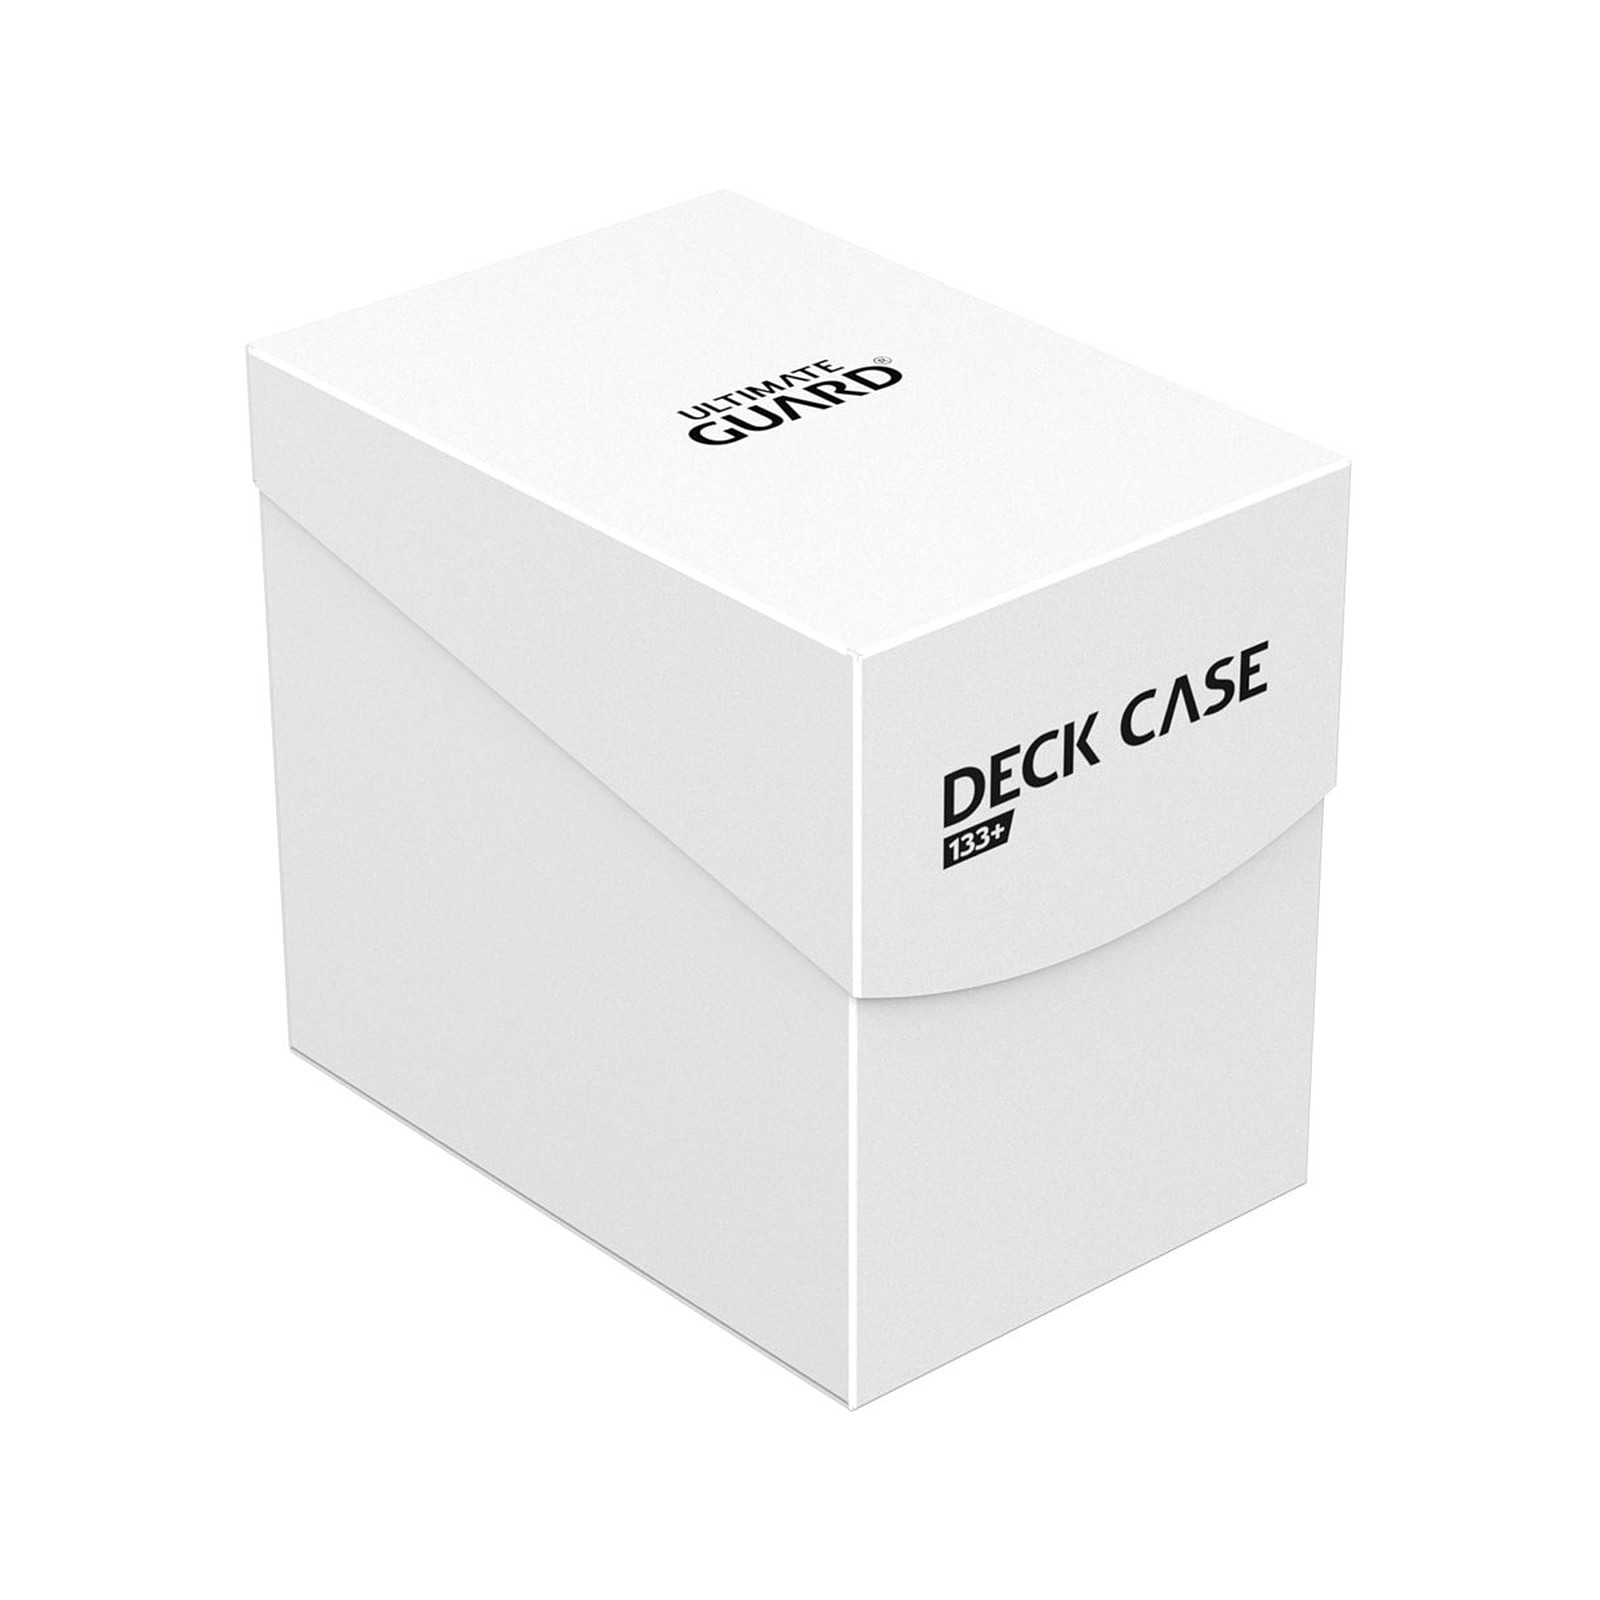 Ultimate Guard - Boite pour cartes Deck Case 133+ taille standard Blanc - Accessoire jeux Ultimate Guard